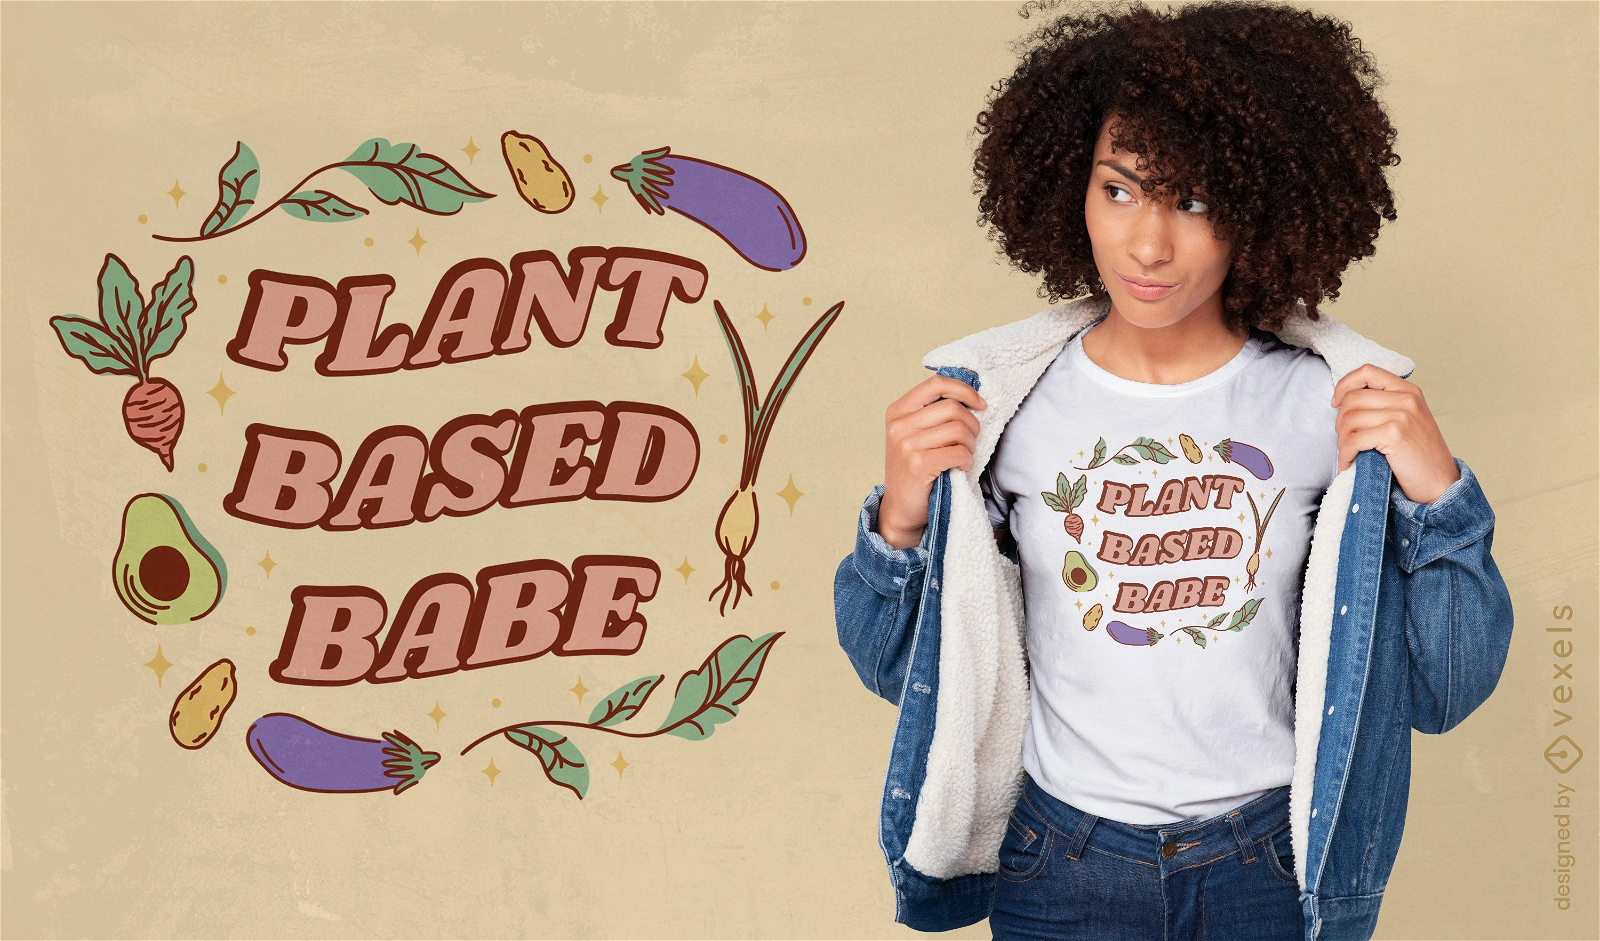 Dise?o de camiseta de estilo de vida vegano basado en plantas.